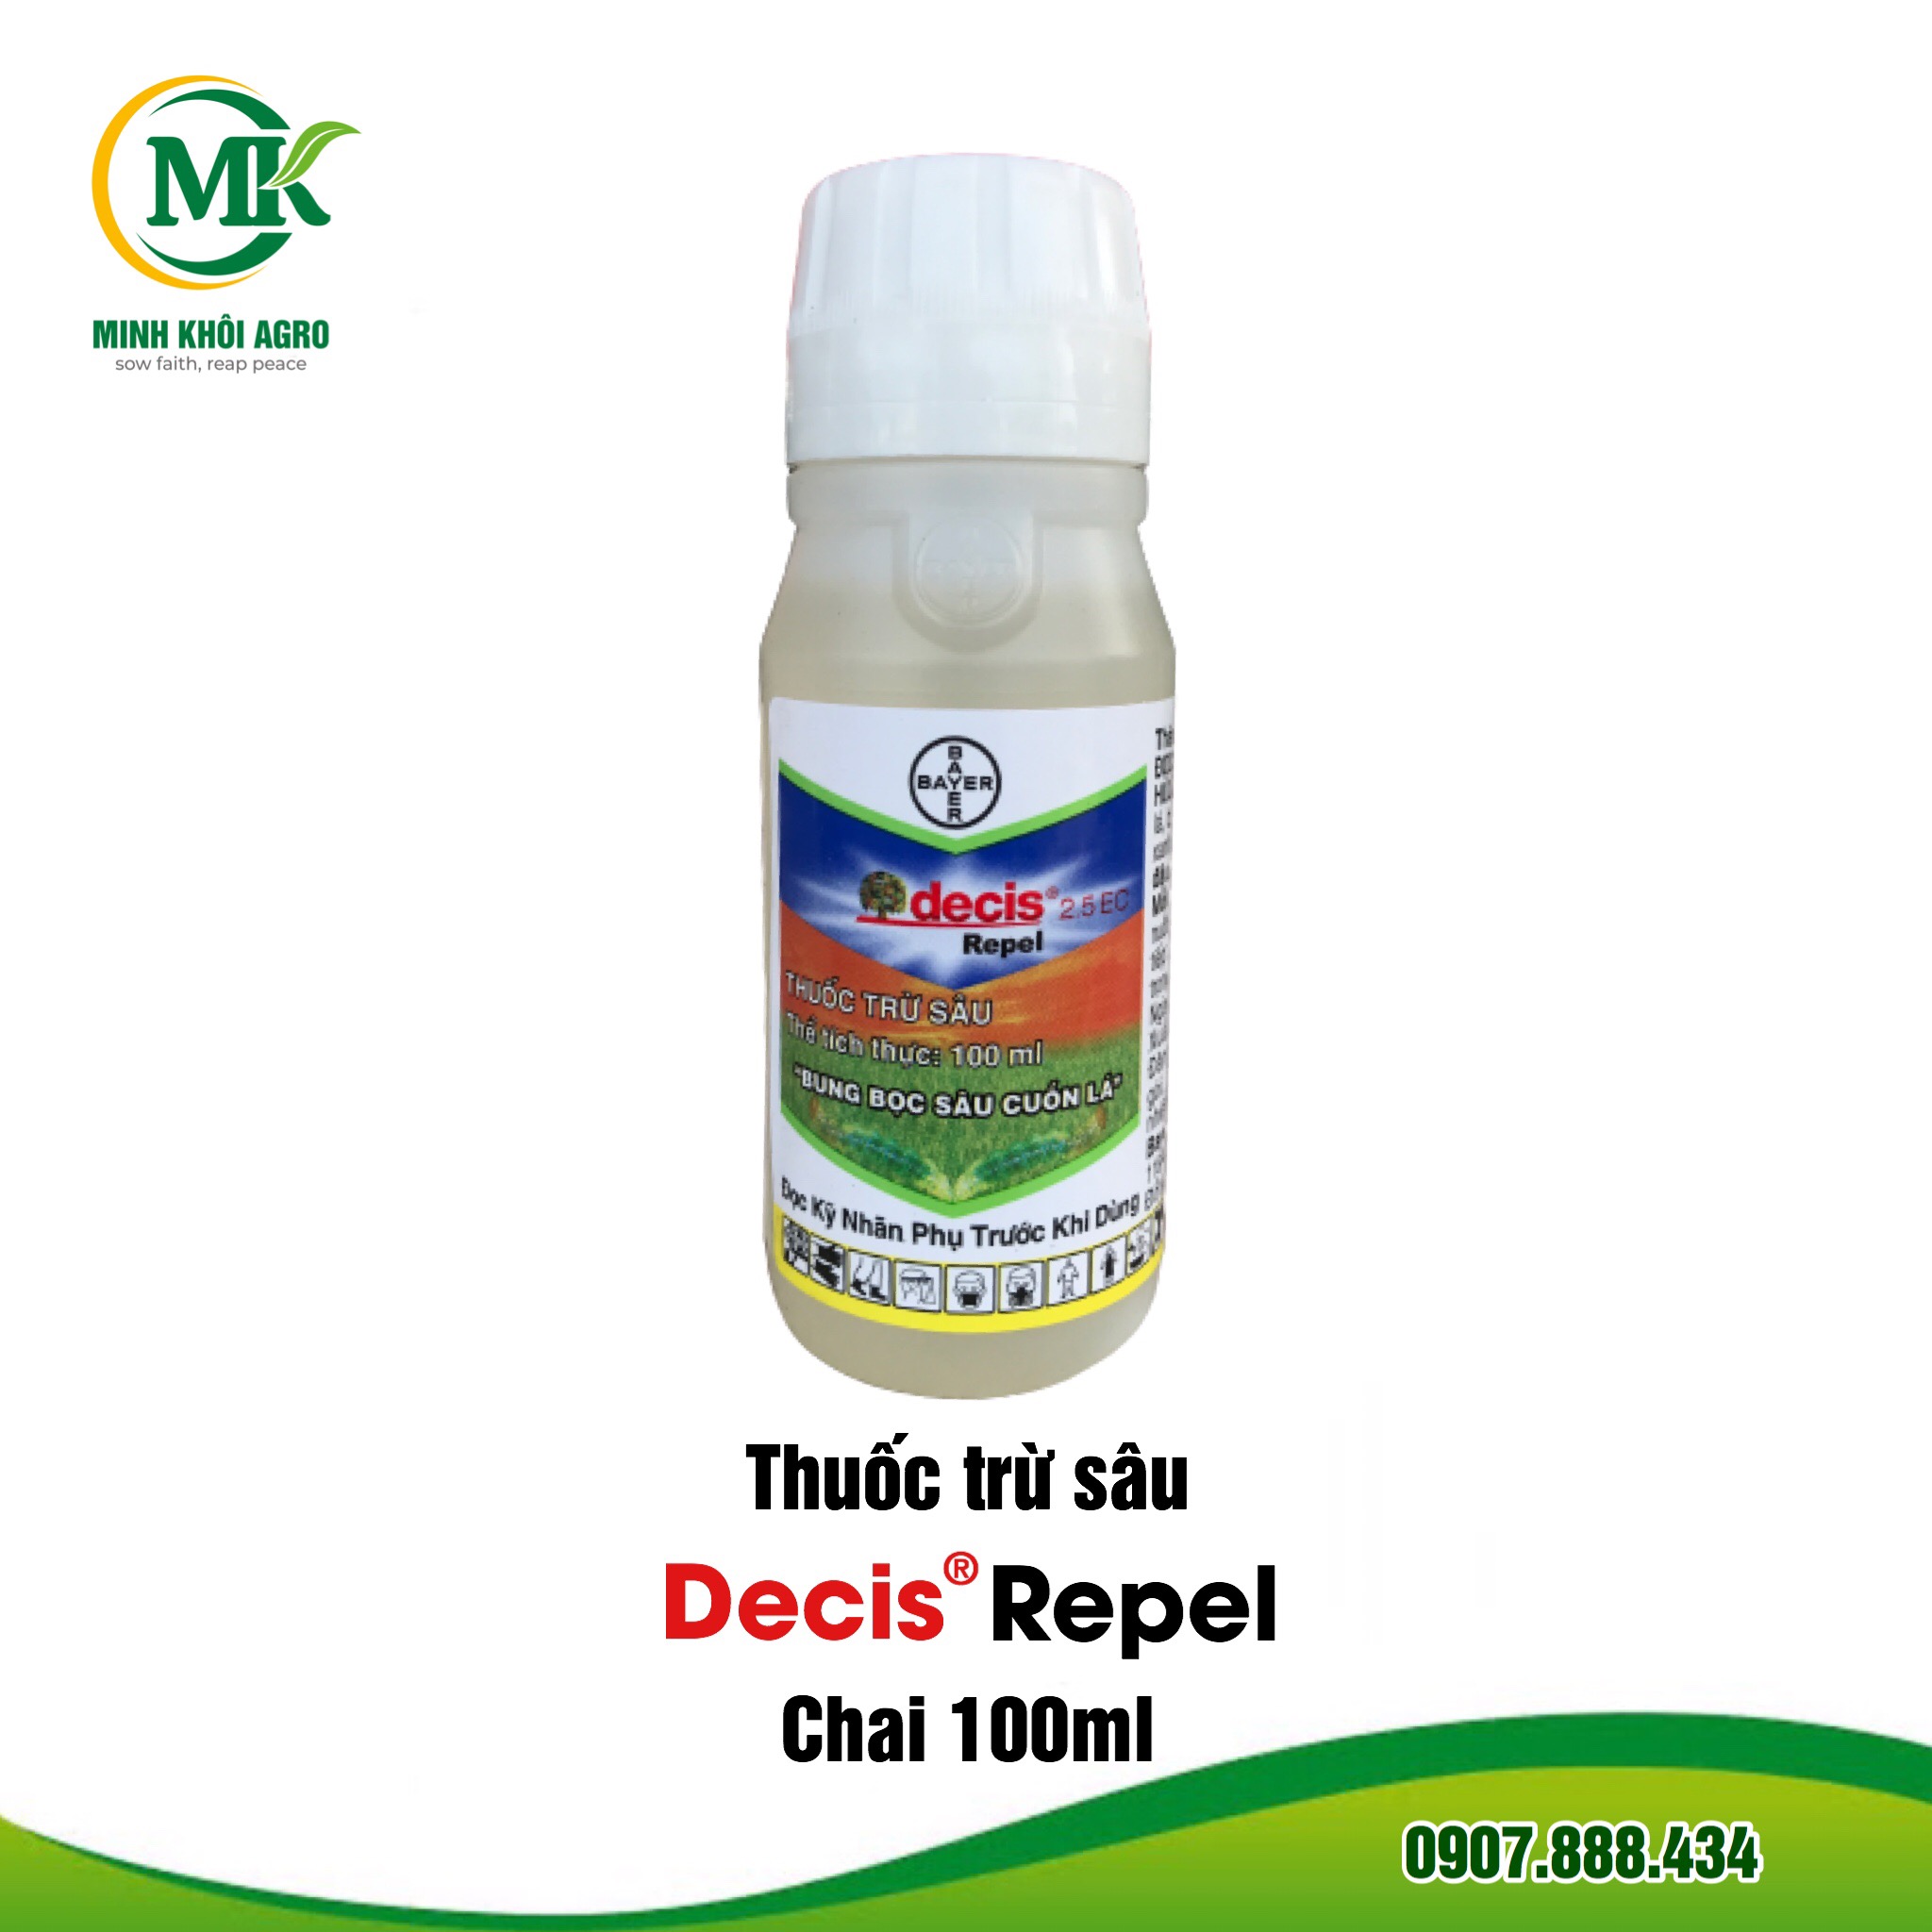 Thuốc trừ sâu Decis Repel 2.5EC - Chai 100ml